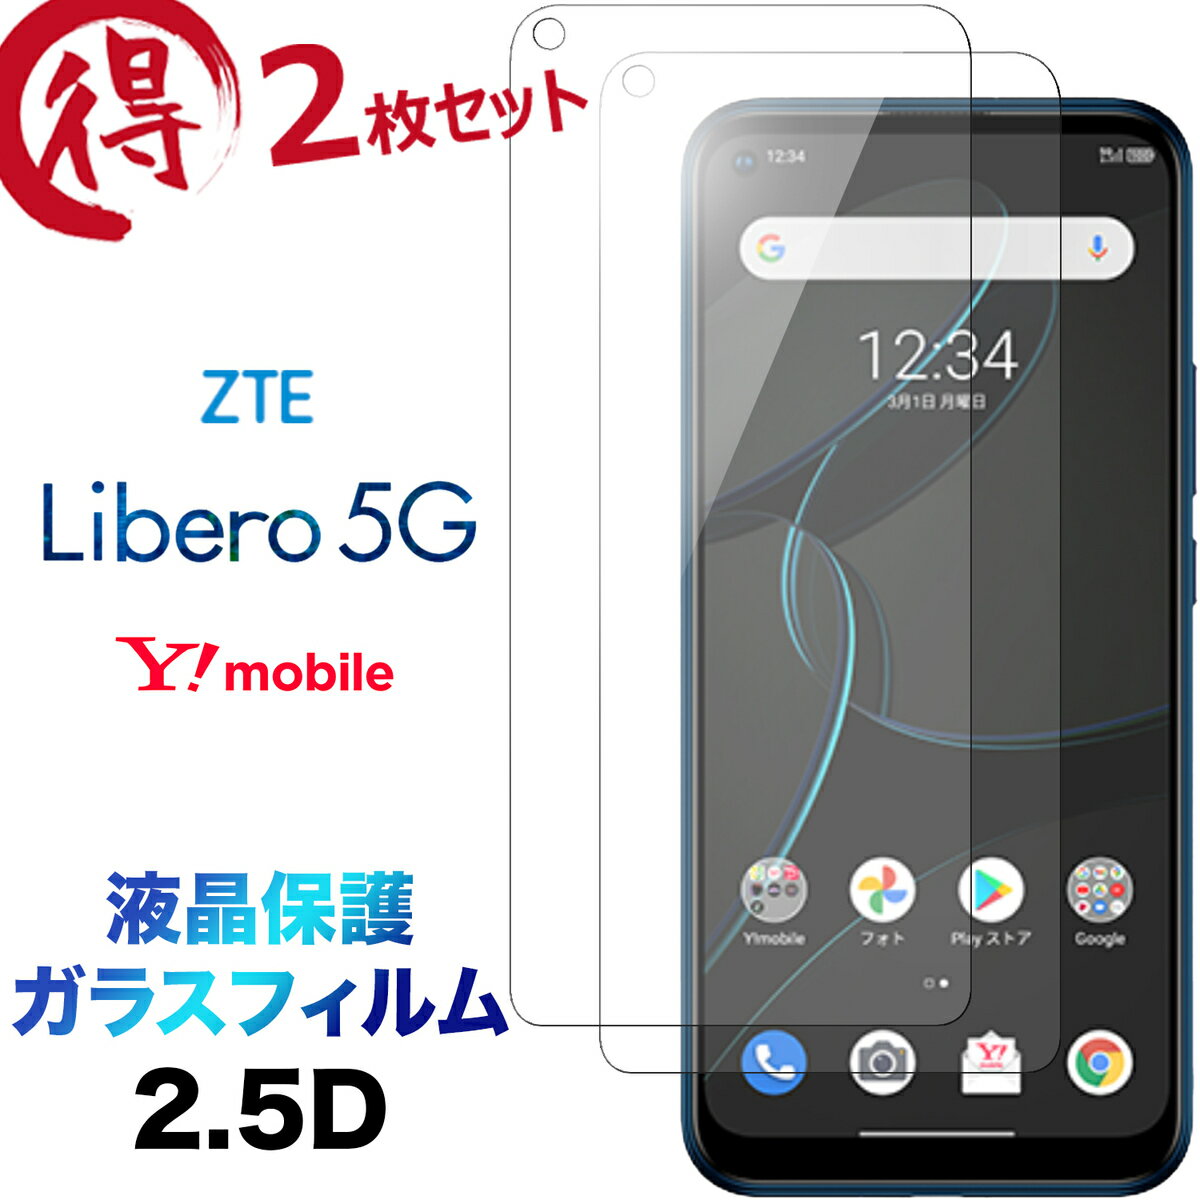 Libero 5G libero5g ZTE リベロ ガラスフィルム 2枚セット 画面保護 液晶保護 2.5D 保護フィルム 強化ガラス 硬度9H クリーナーシート付き ラウンドエッジ Y!mobile ZTE リベロ ワイモバイル Yモバイル